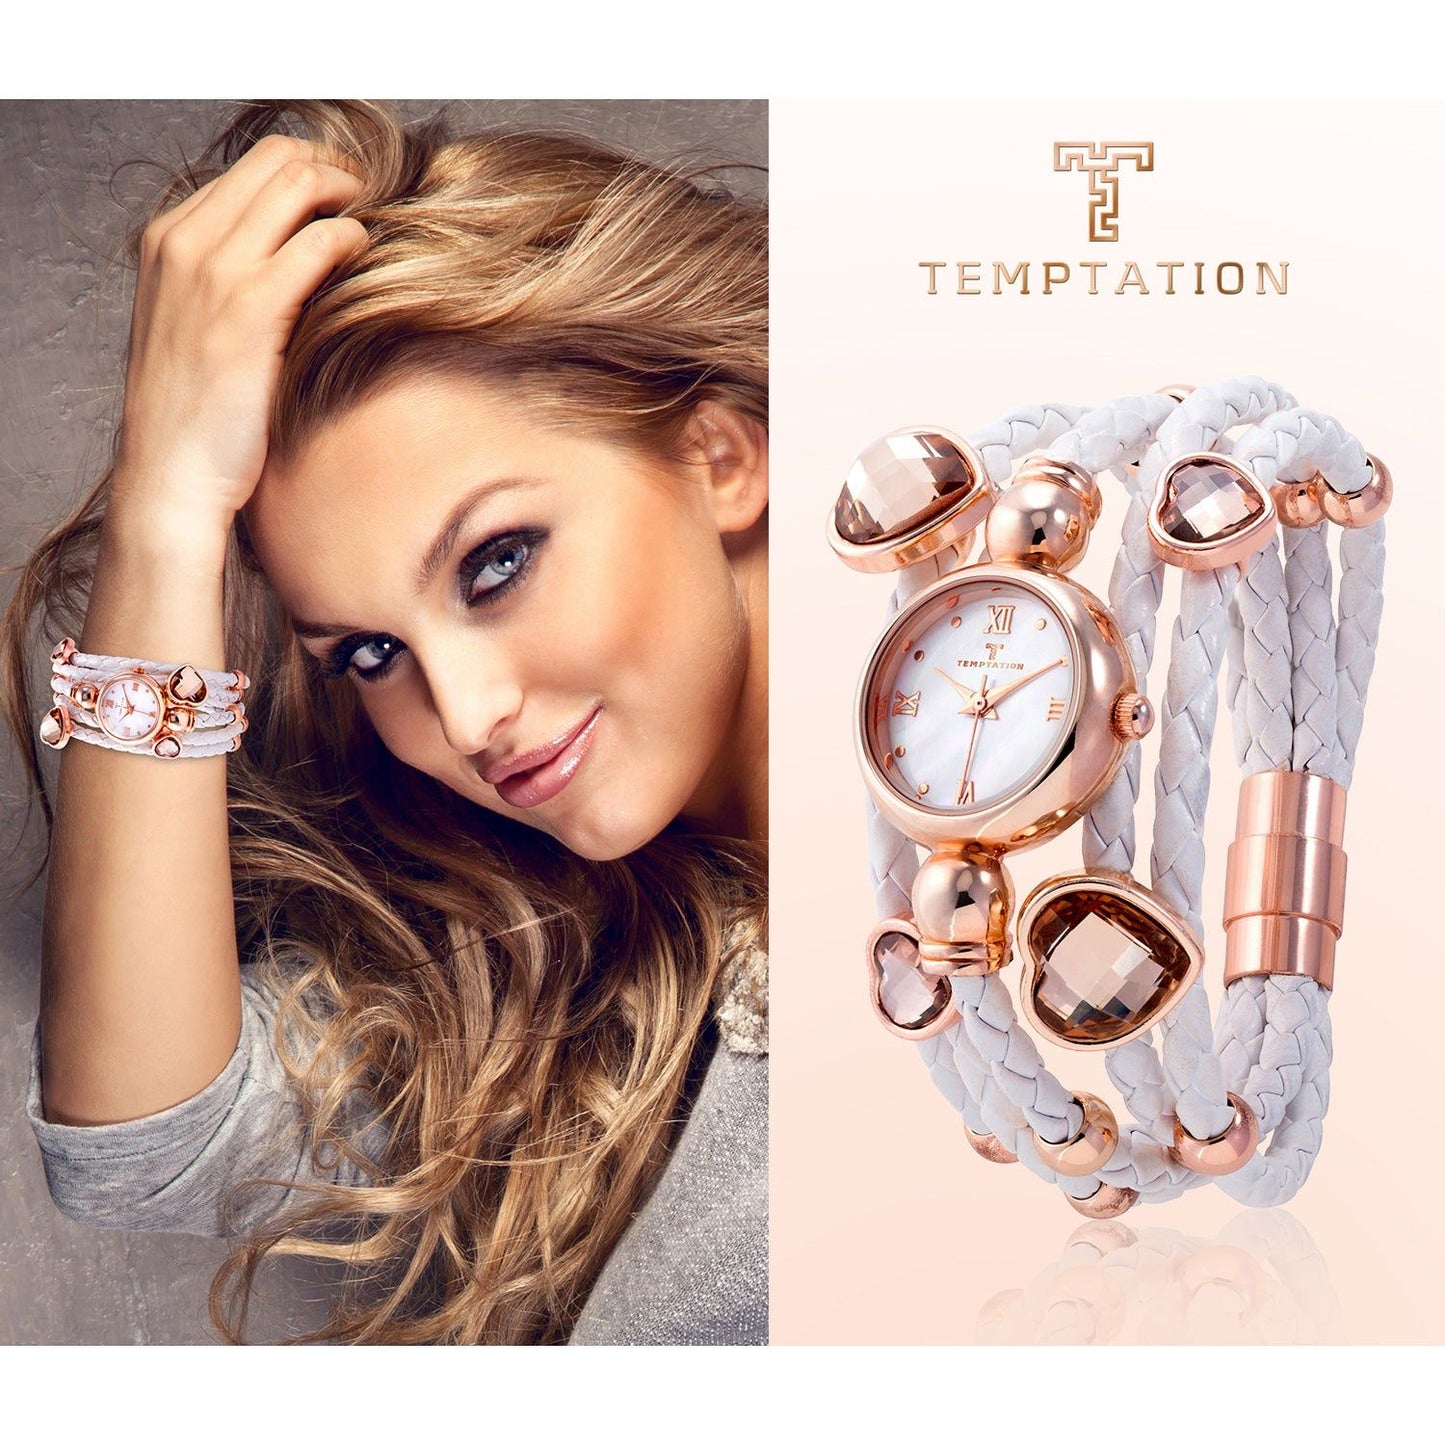 TEMPTATION TEMPTATION MOD. TEA-2015-03 WATCHES temptation-mod-tea-2015-03